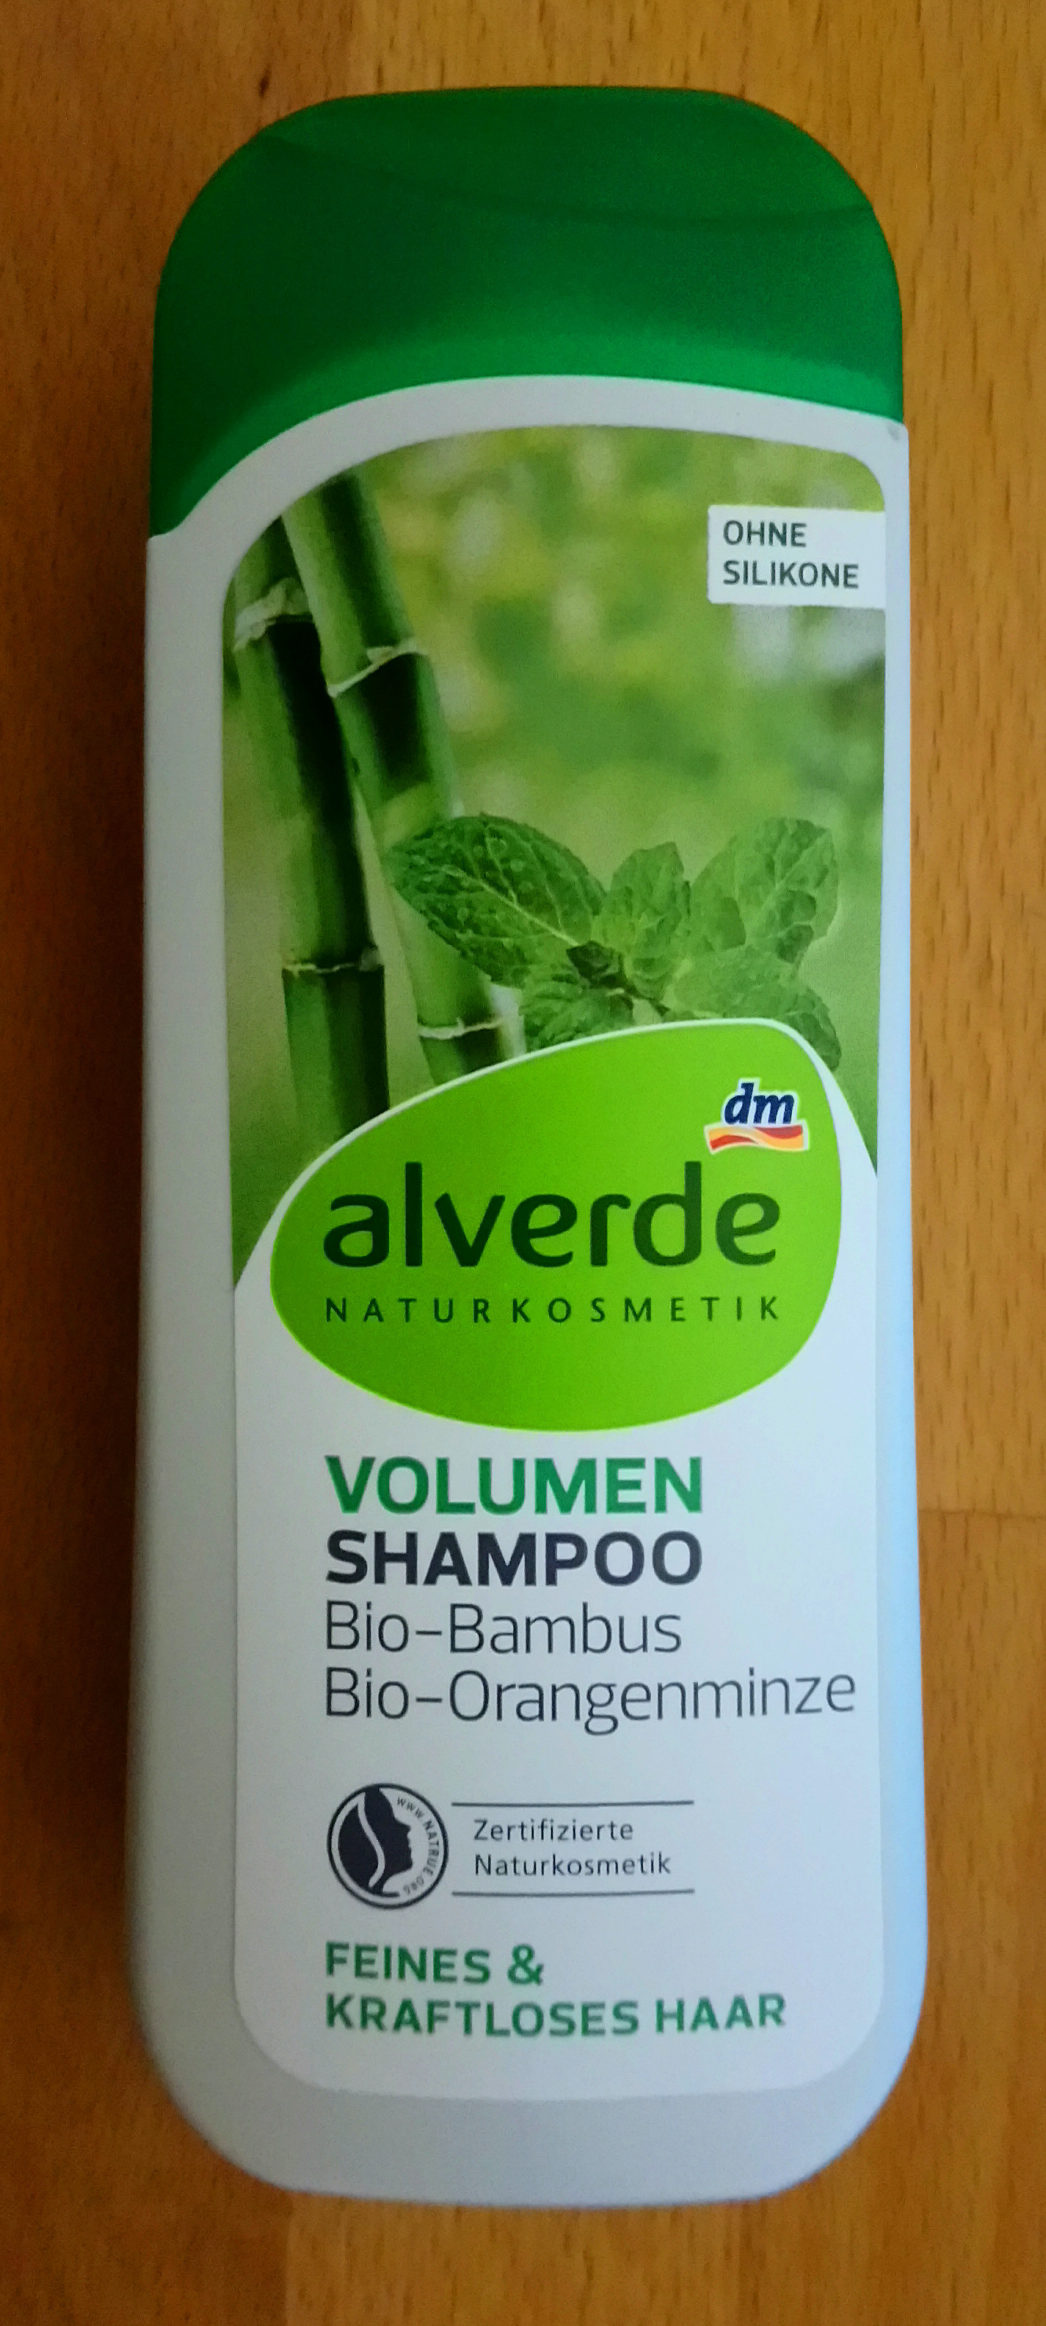 Volumen Shampoo Bio-Bambus Bio-Orangenminze - Produit - de